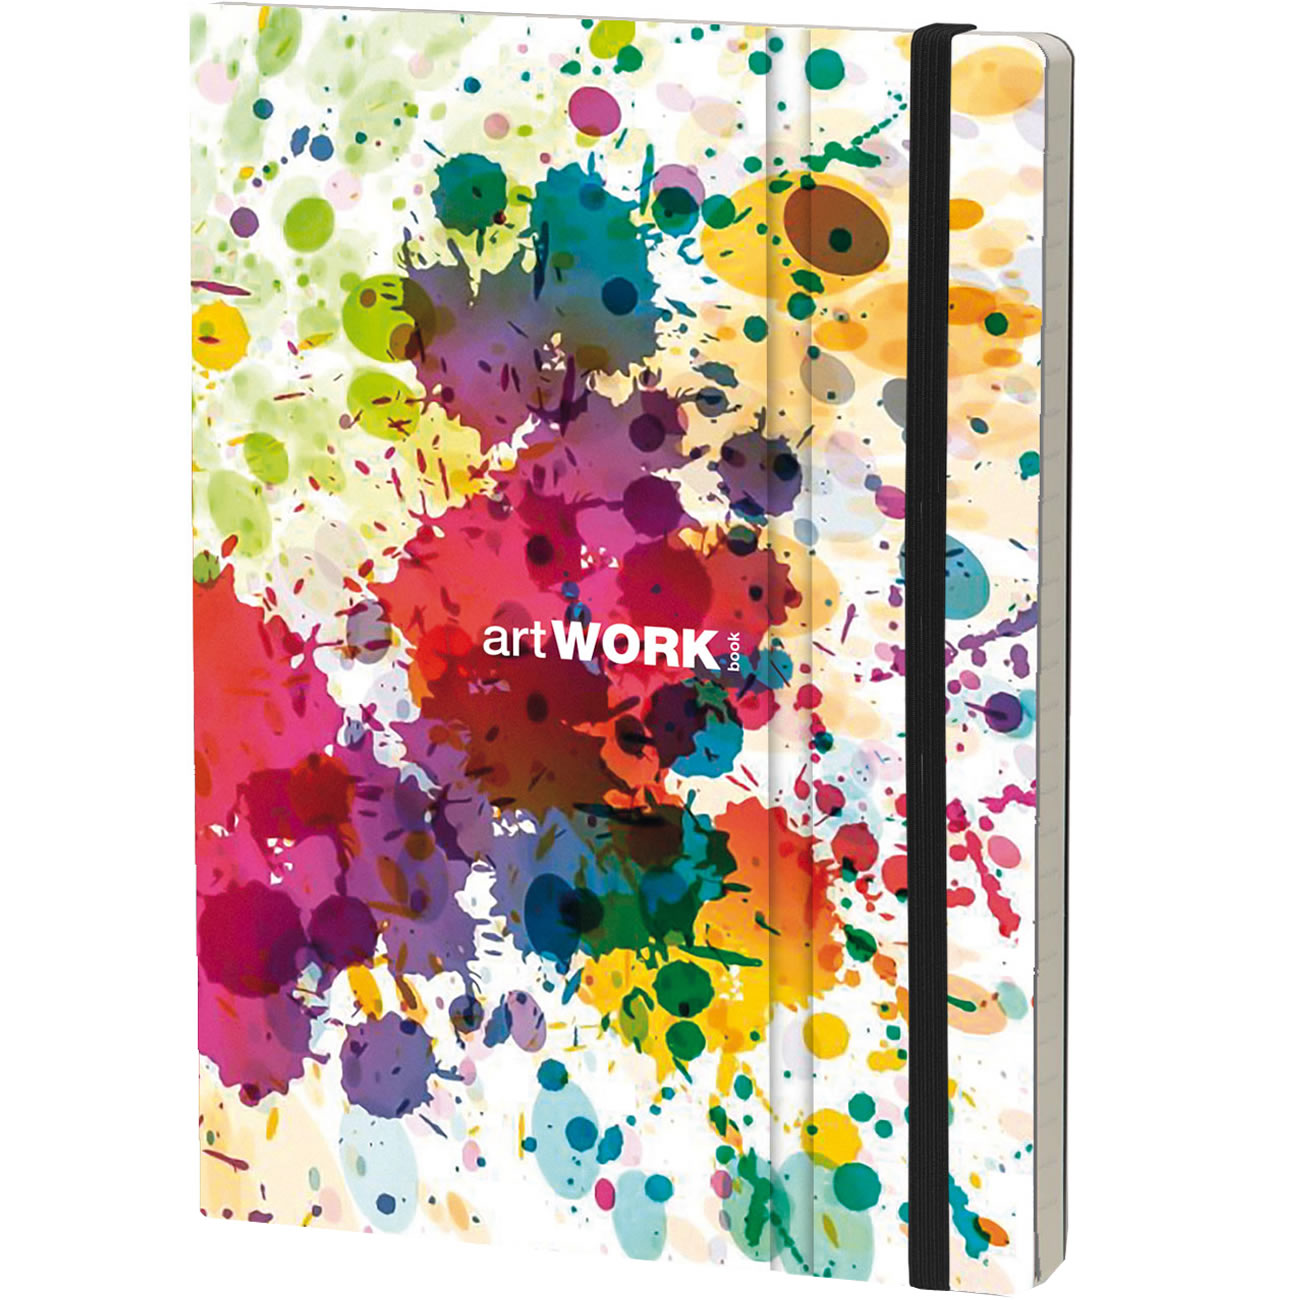 Stifflex Art Notebook - A5 Sketchbook